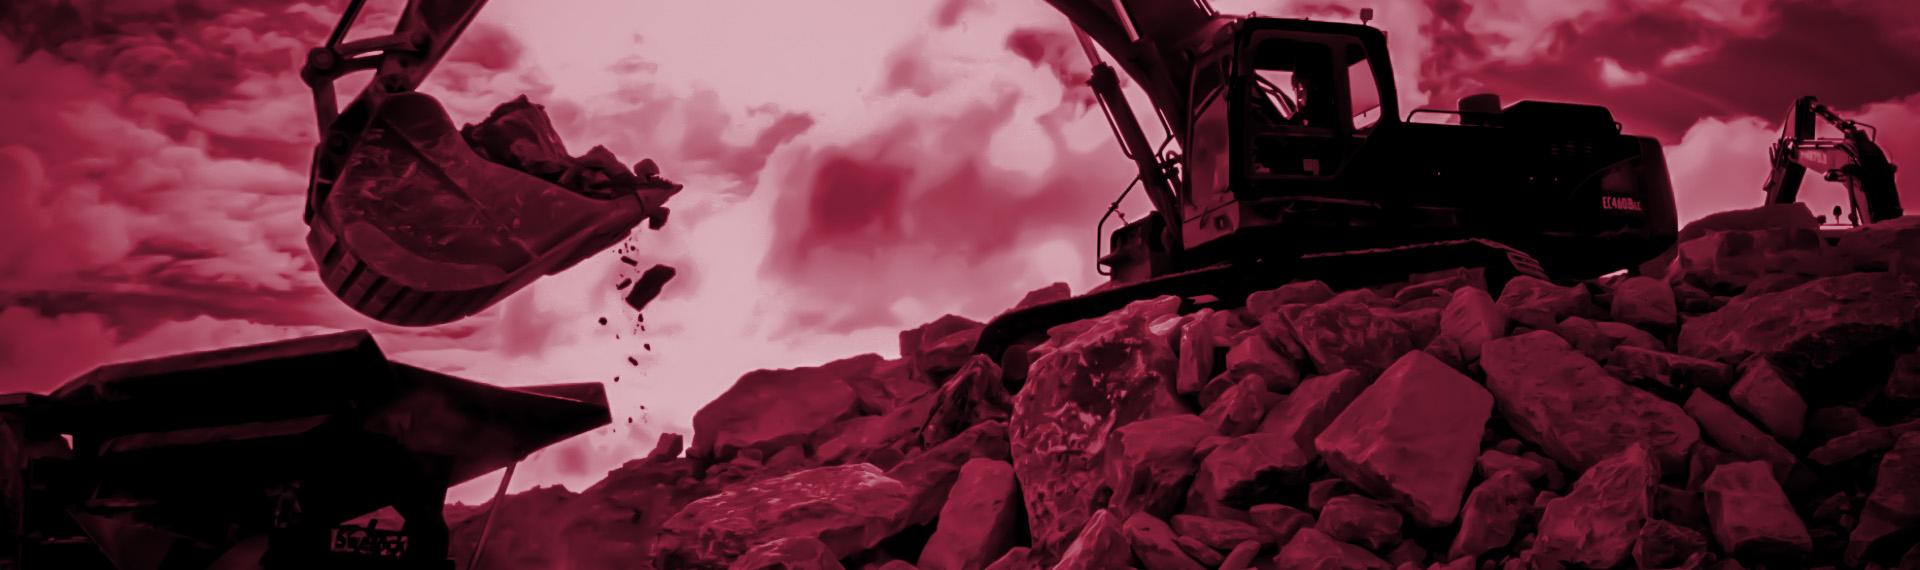 用Hardox 450钢制成的挖掘机铲斗在辛勤地进行挖掘磨蚀性岩石的作业。